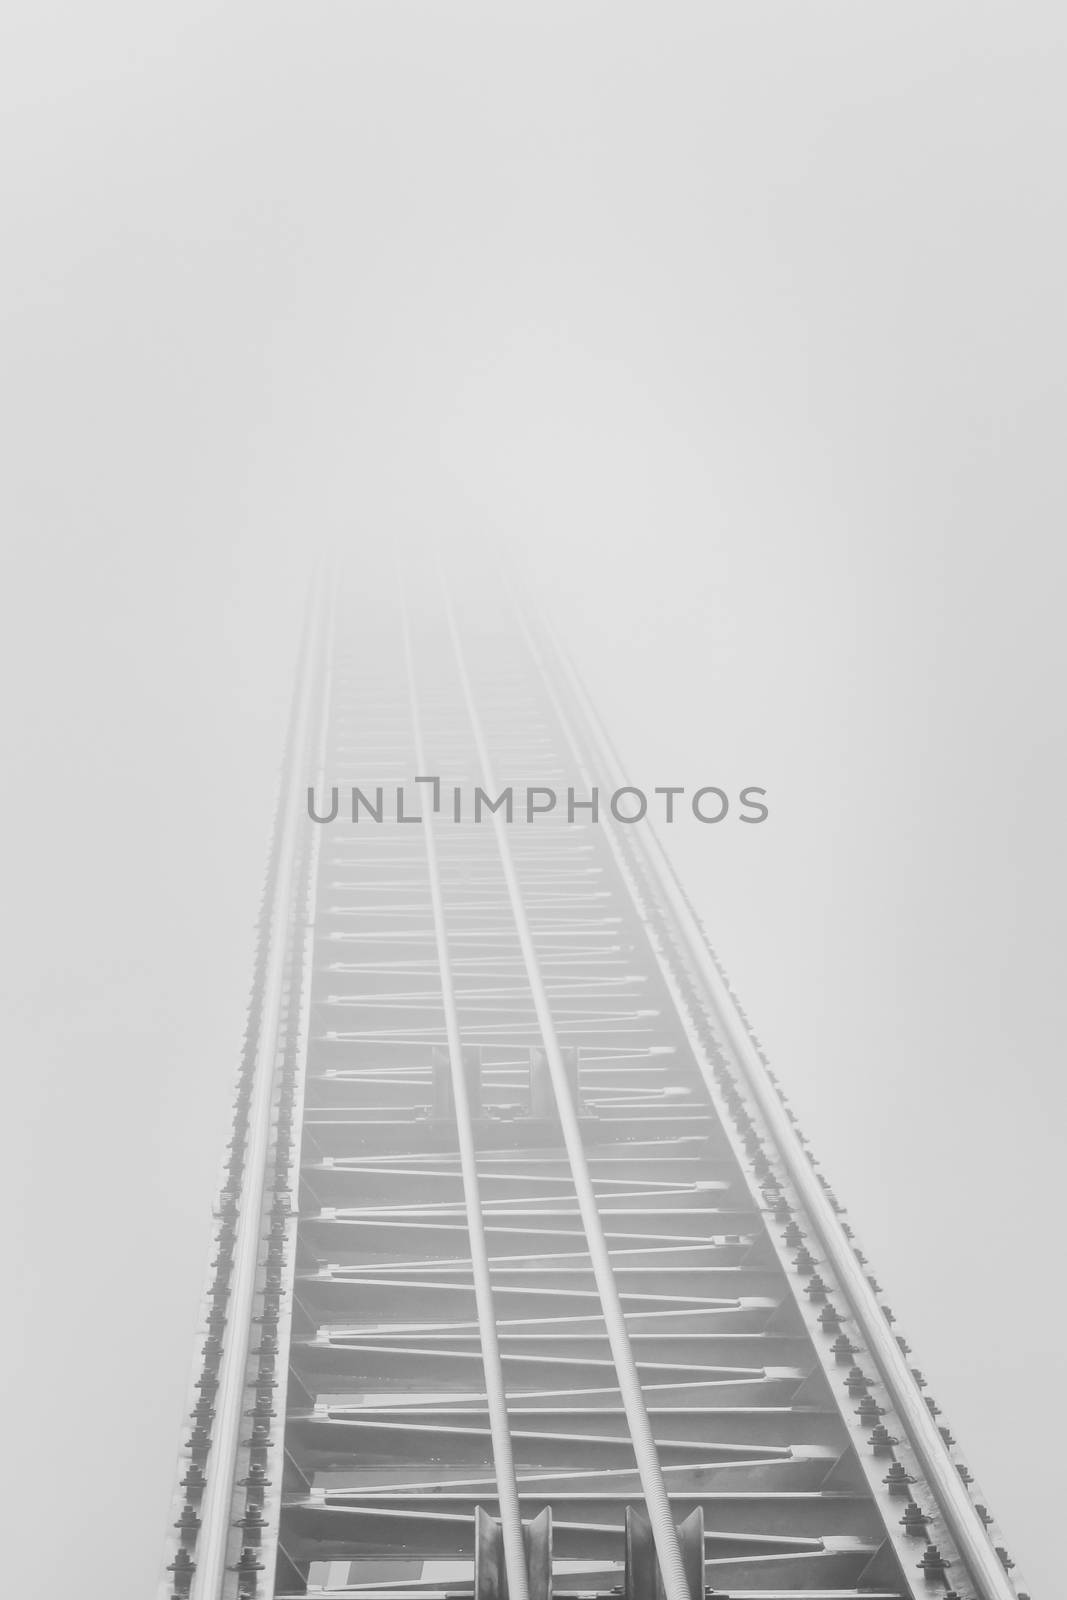 Rails that end in dense fog by sandra_fotodesign